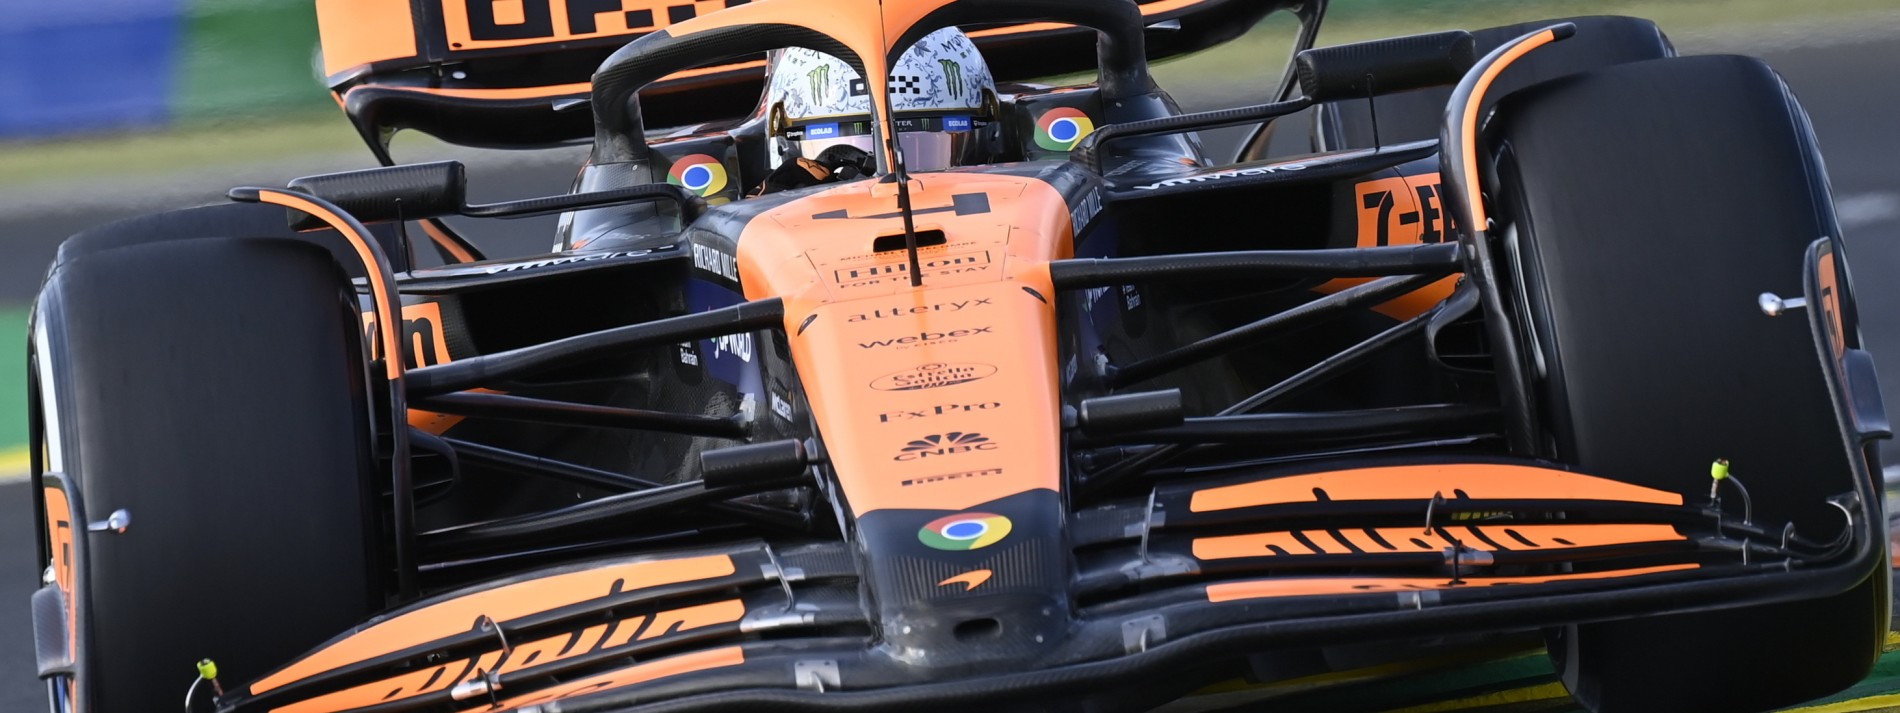 McLaren-Piloten gewinnen Qualifikation in Ungarn